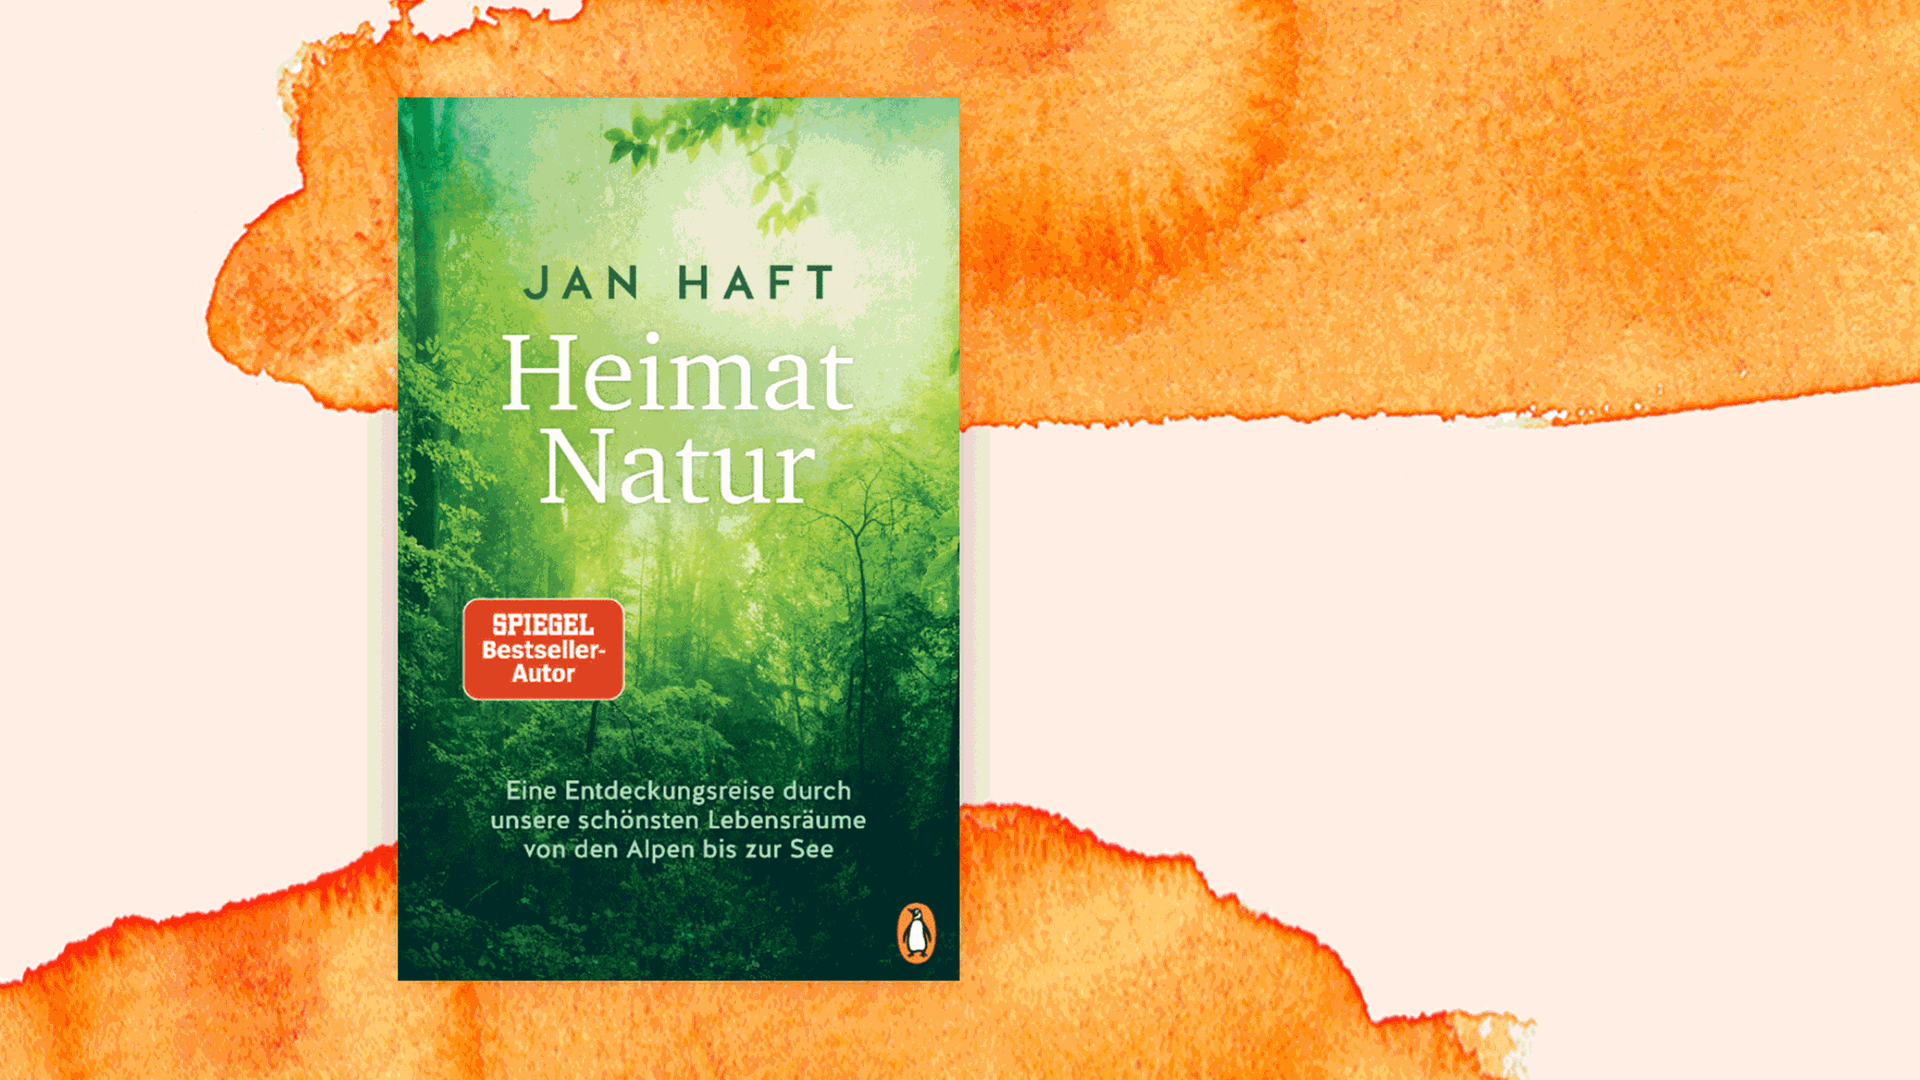 Cover des Buches "Heimat Natur: Eine Entdeckungsreise durch unsere schönsten Lebensräume von den Alpen bis zur See" von Jan Haft.